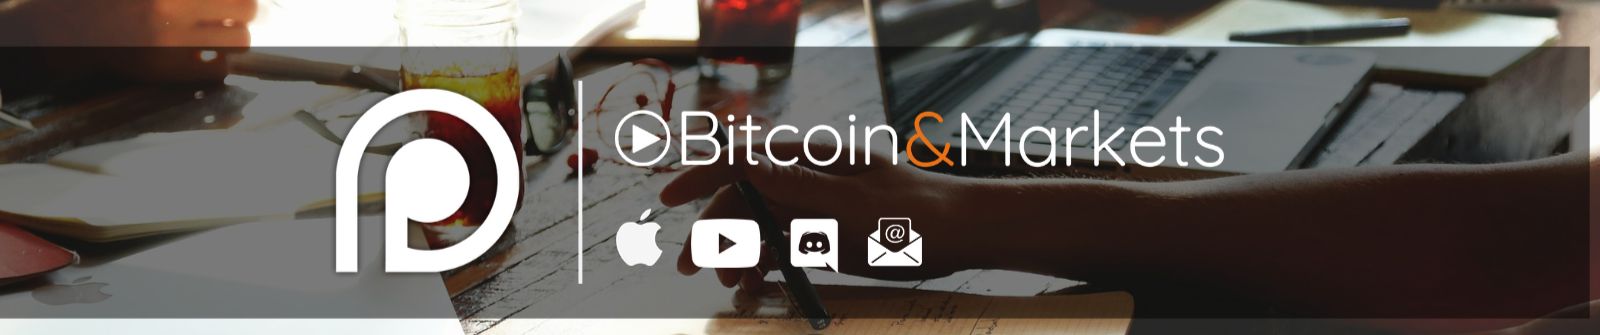 bitcoin ir markets soundcloud bitcoin kursas naira